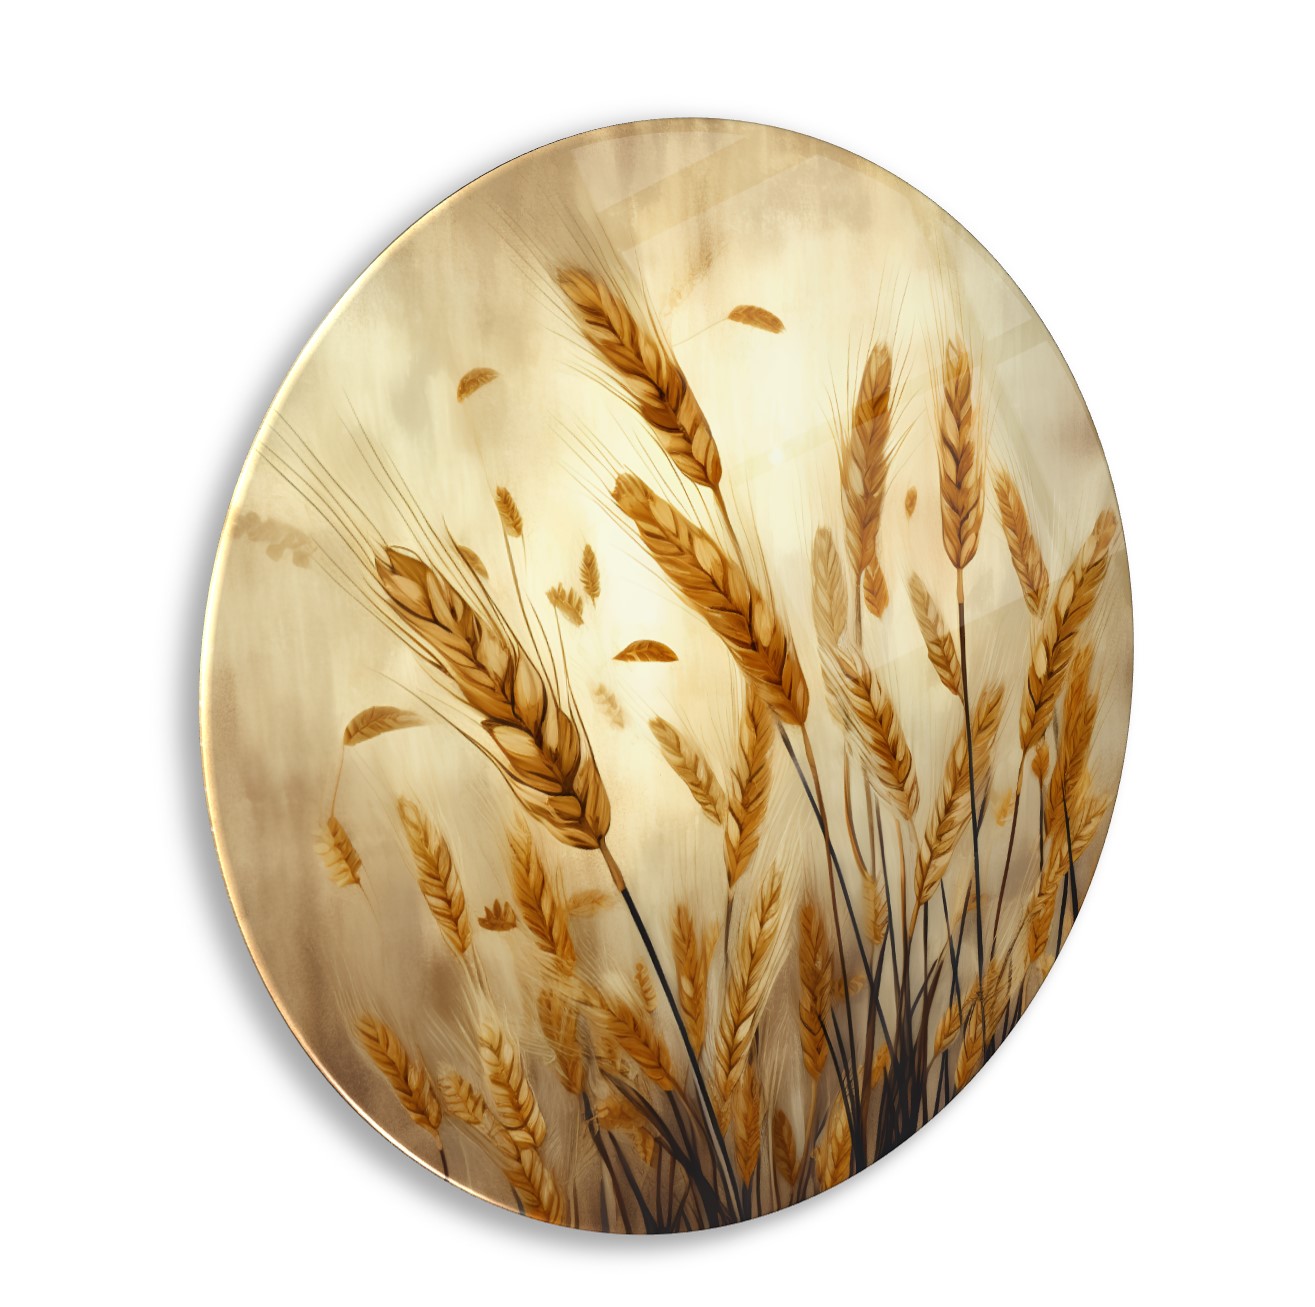 Buğday Başakları Cam Tablo